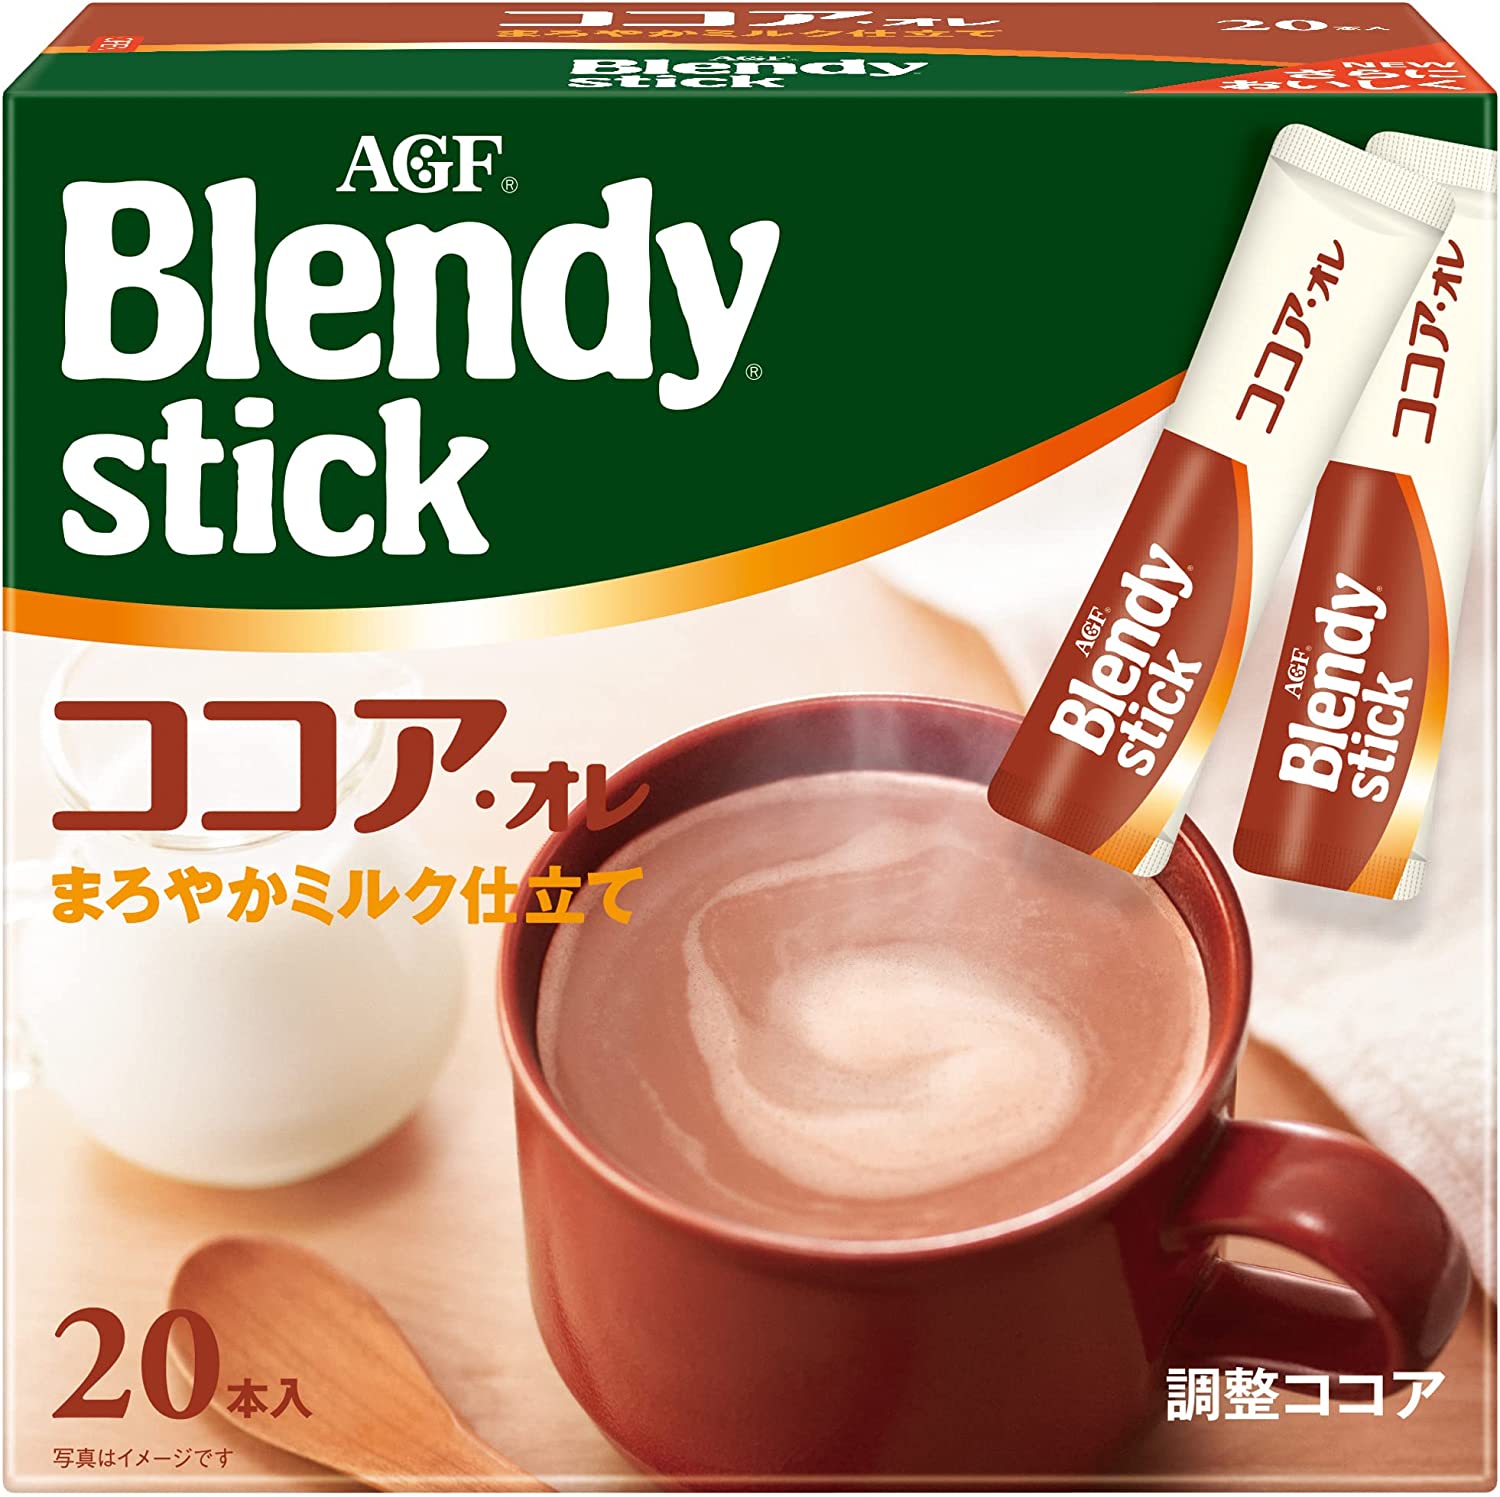 味之素AGF Blendy Ajinomoto Agf Brendy Stick Cocoa 20件